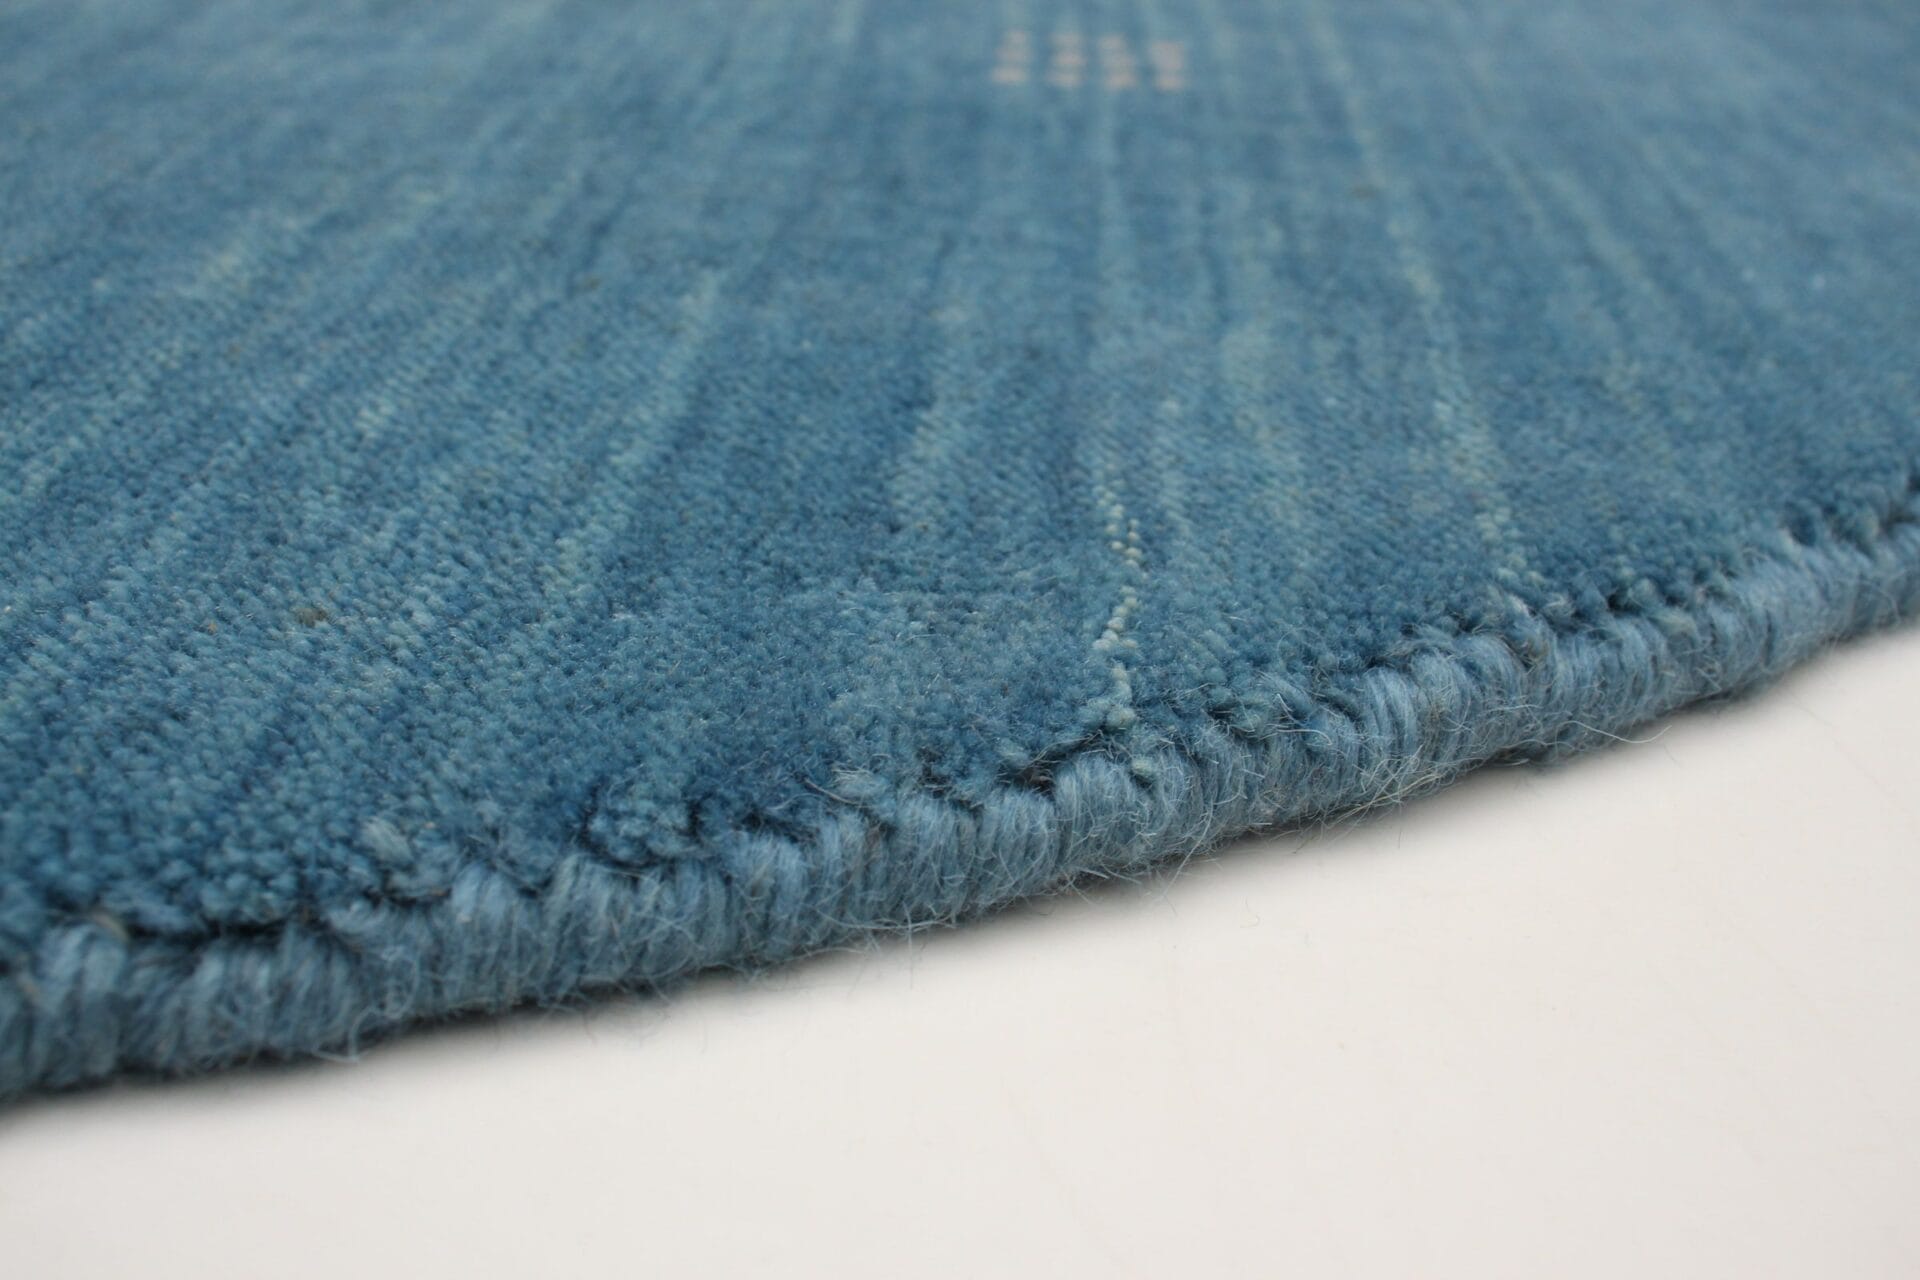 Beschrijving: Een close-up van een blauw vloerkleed op een witte ondergrond.